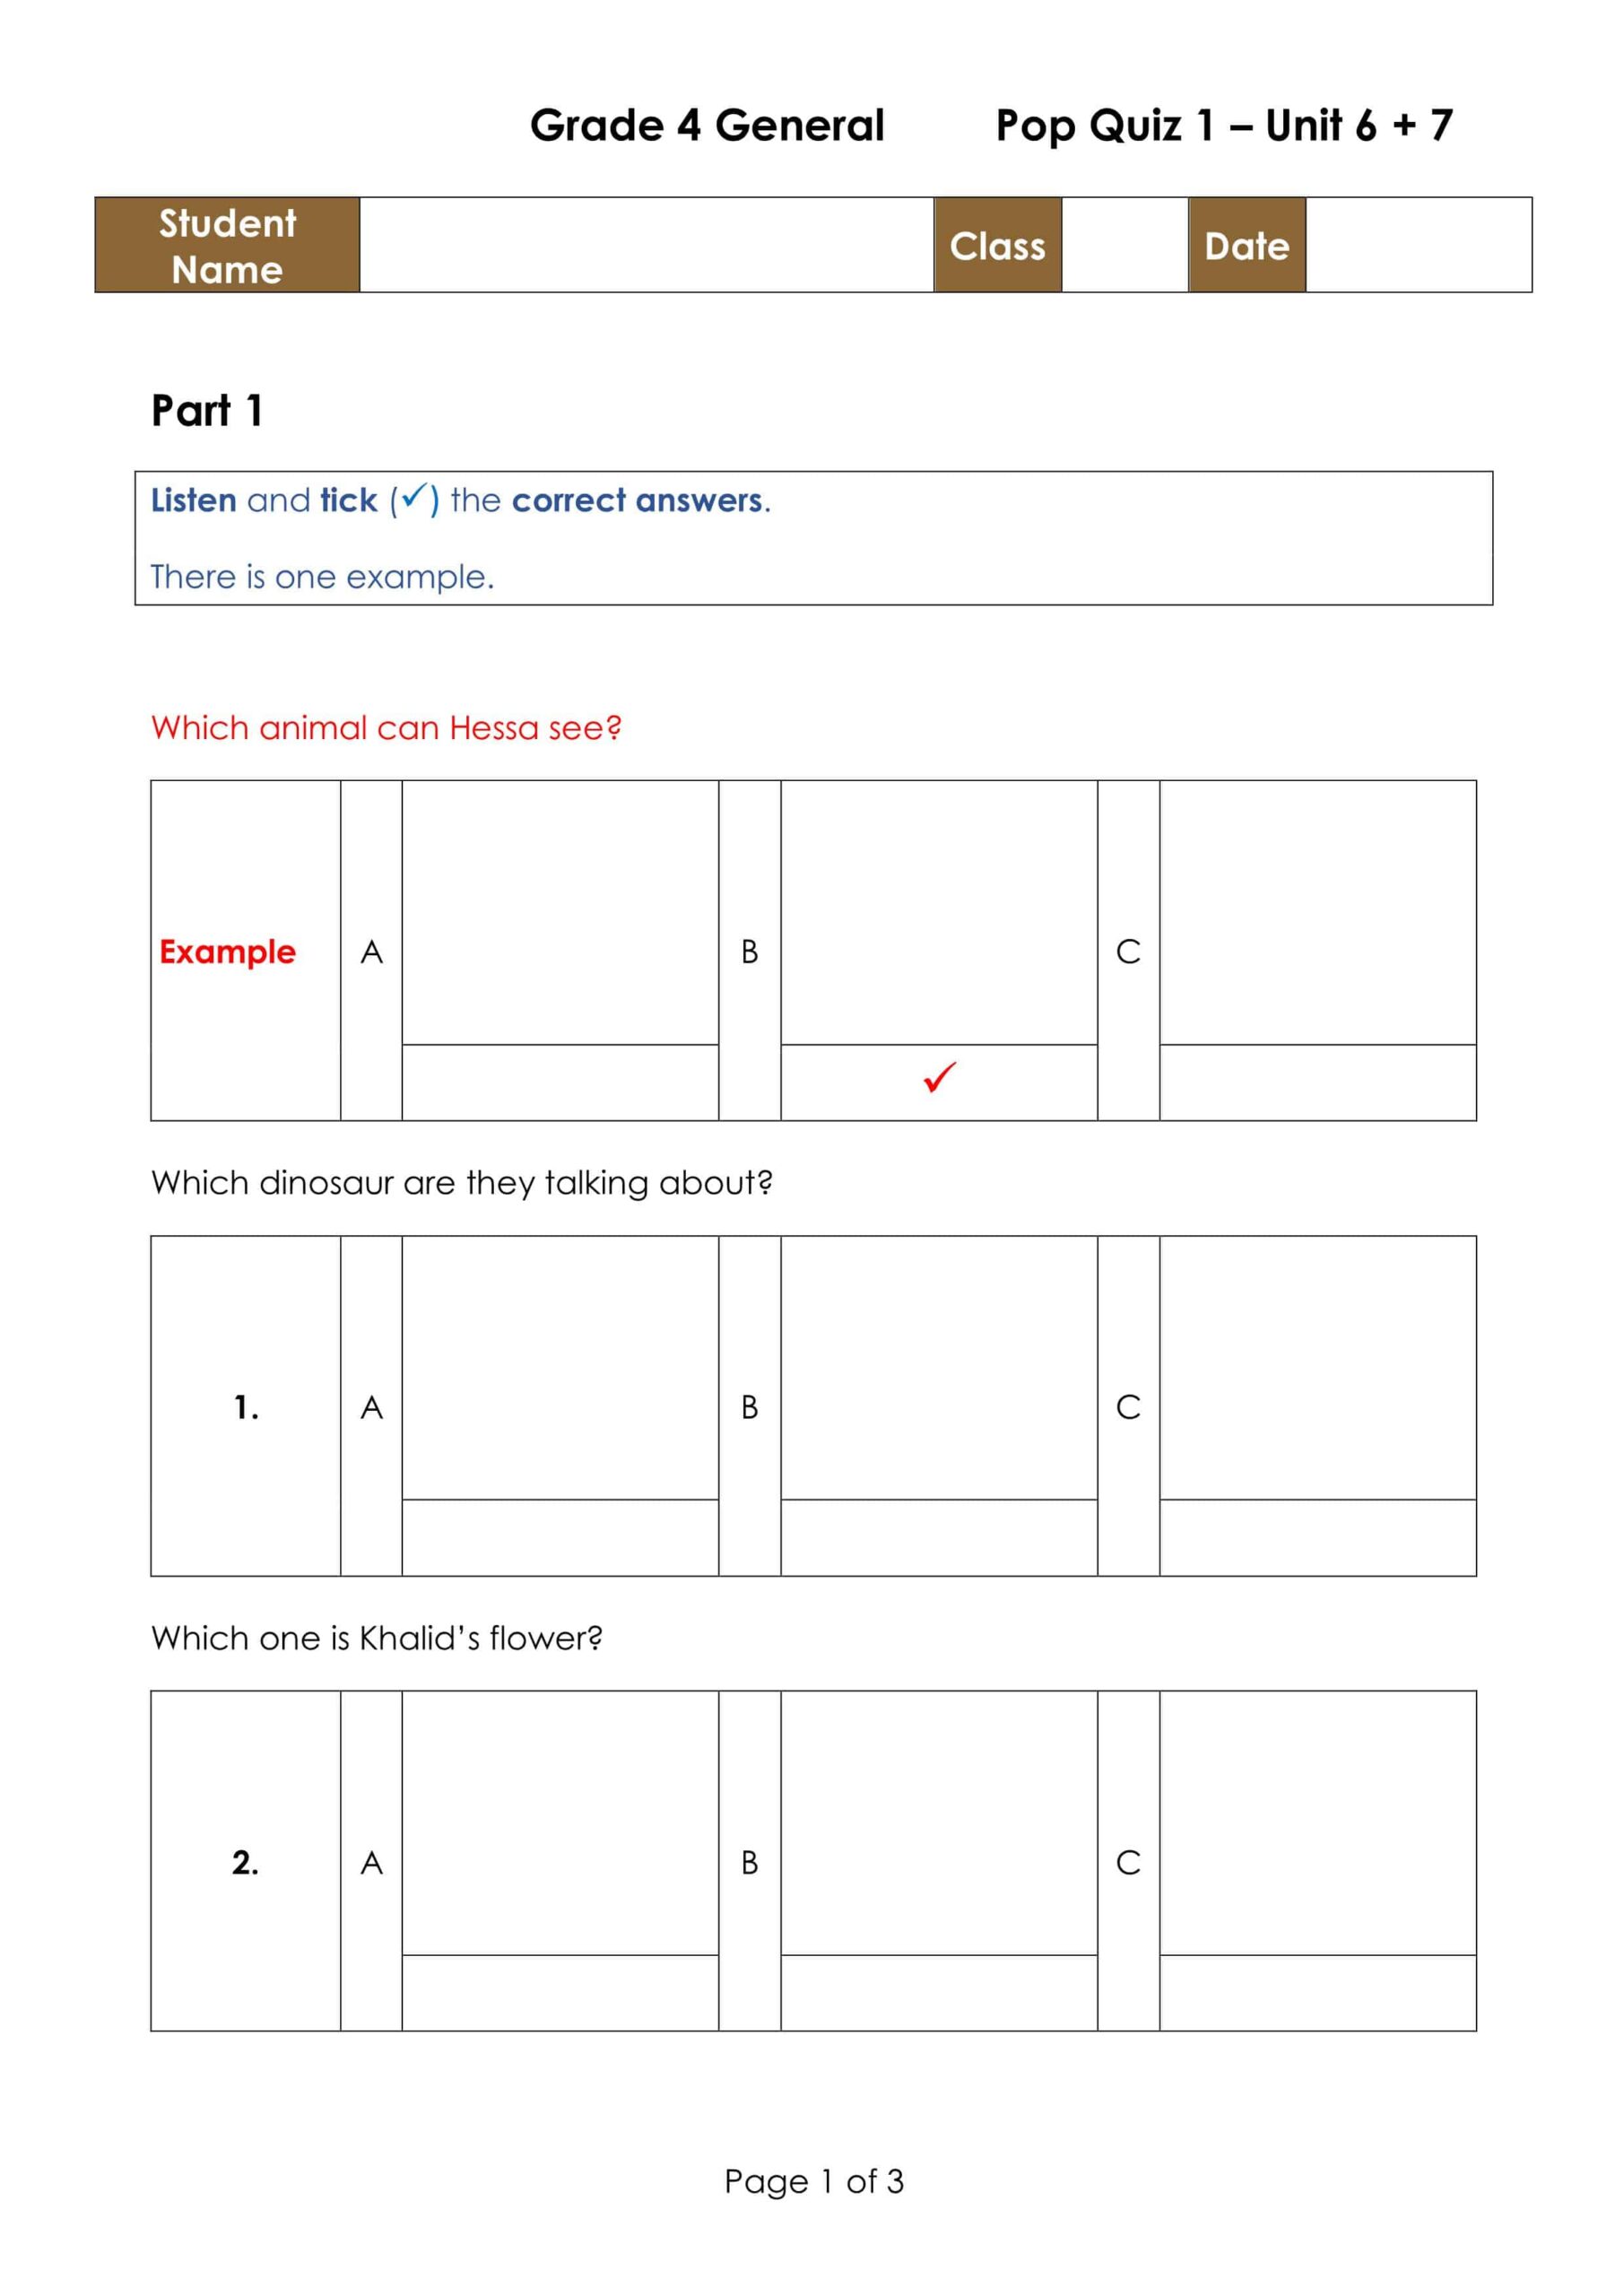 حل أوراق عمل Pop Quiz 1 Unit 6 & 7 اللغة الإنجليزية الصف الرابع 